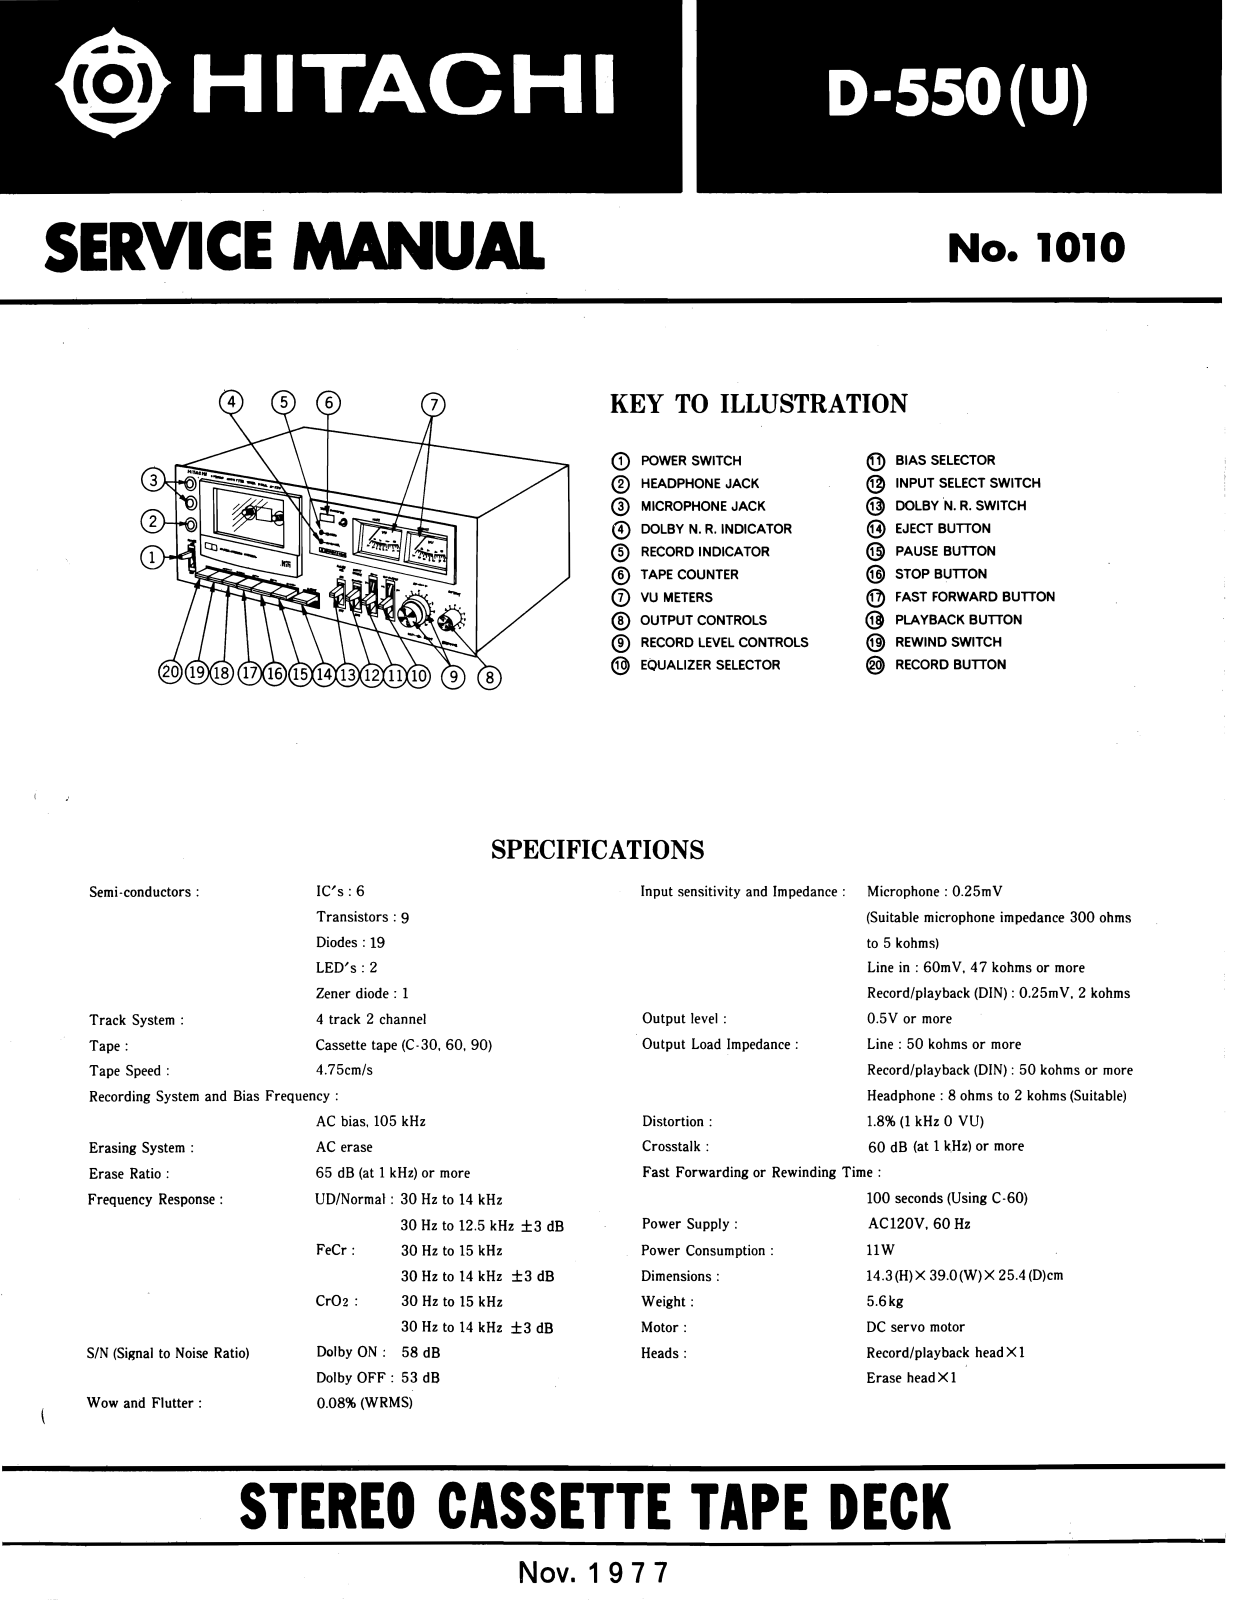 Hitachi D-550-U Service Manual